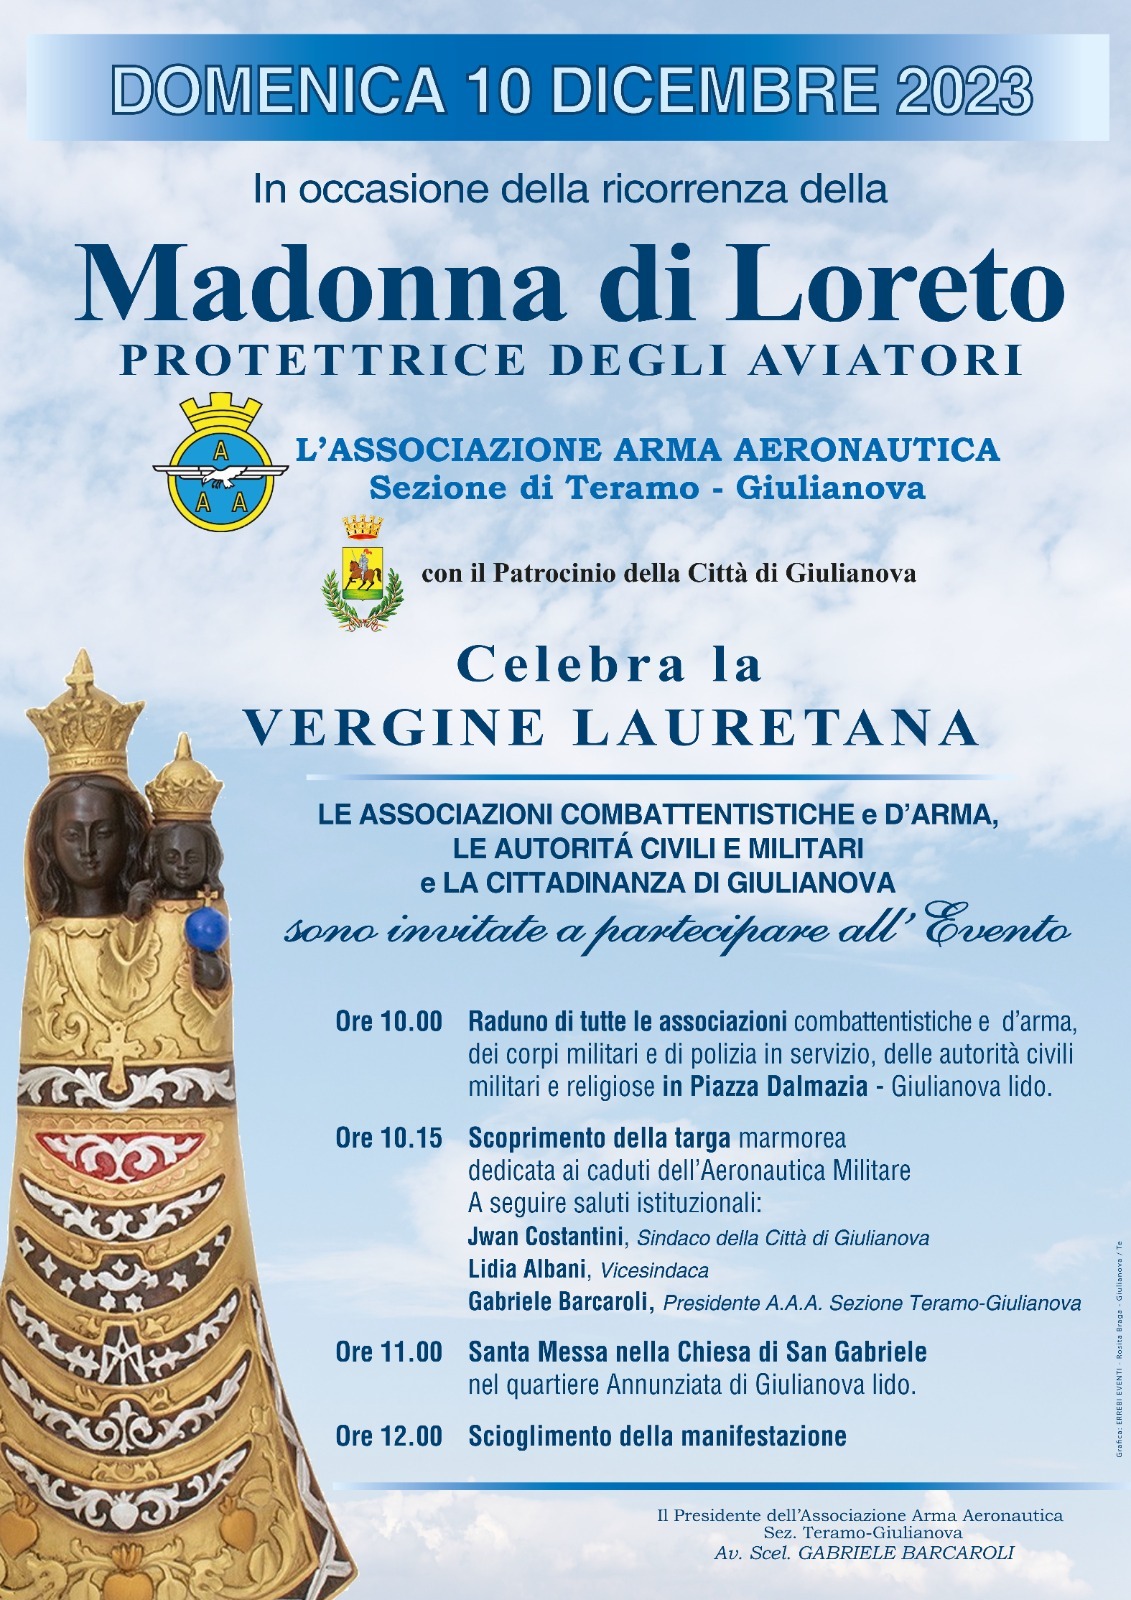 Giulianova. Arriva la celebrazione della Madonna di Loreto, patrona della Marina Militare e dell’Aeronautica